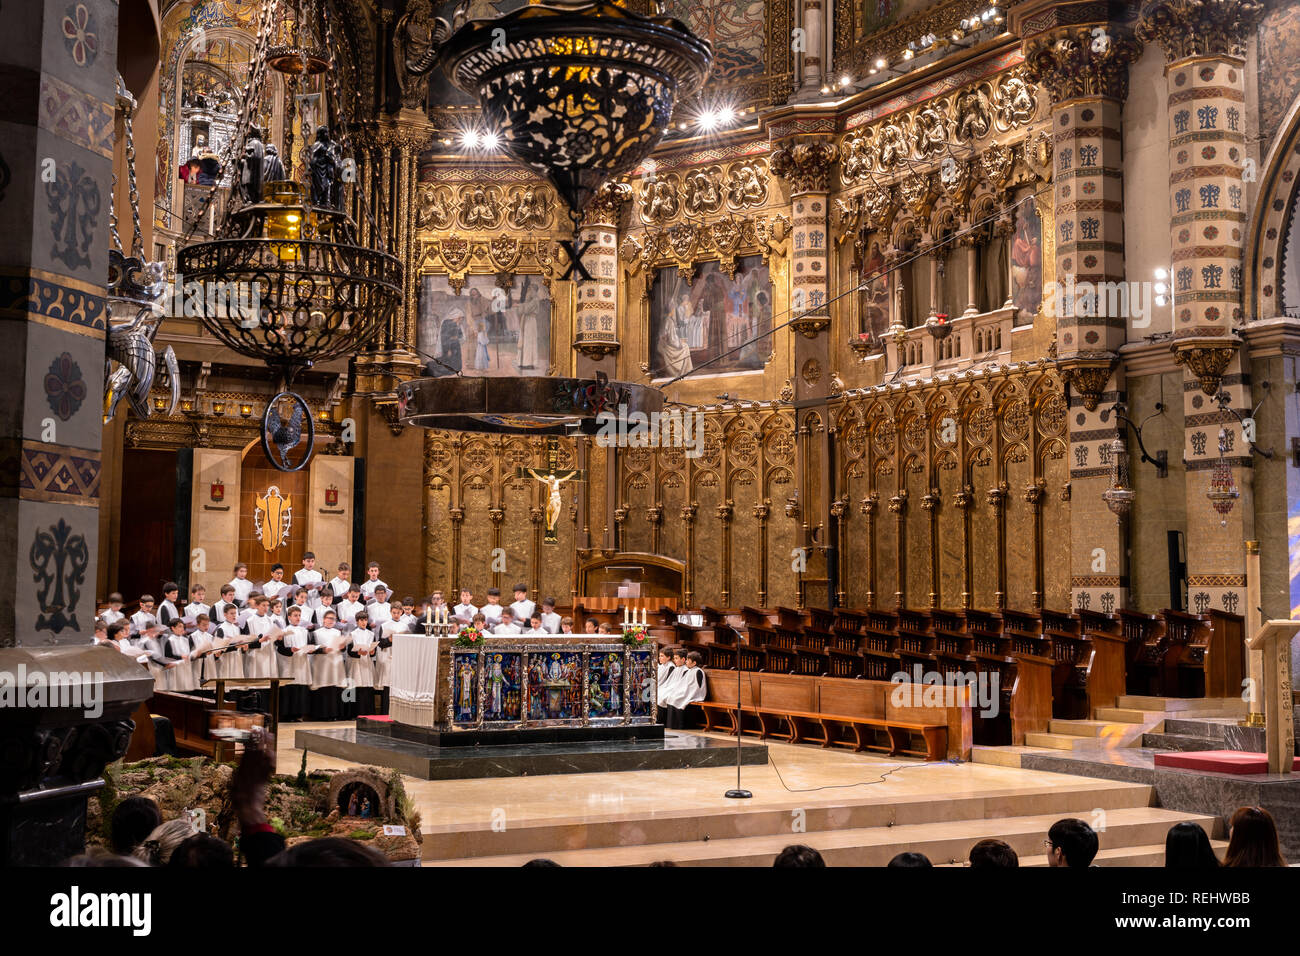 Les gens d'écouter la chorale des enfants de chœur dans le monastère de Montserrat, le plus ancien choeur à l'église, l'Europe, l'Espagne, escolania de masse Banque D'Images